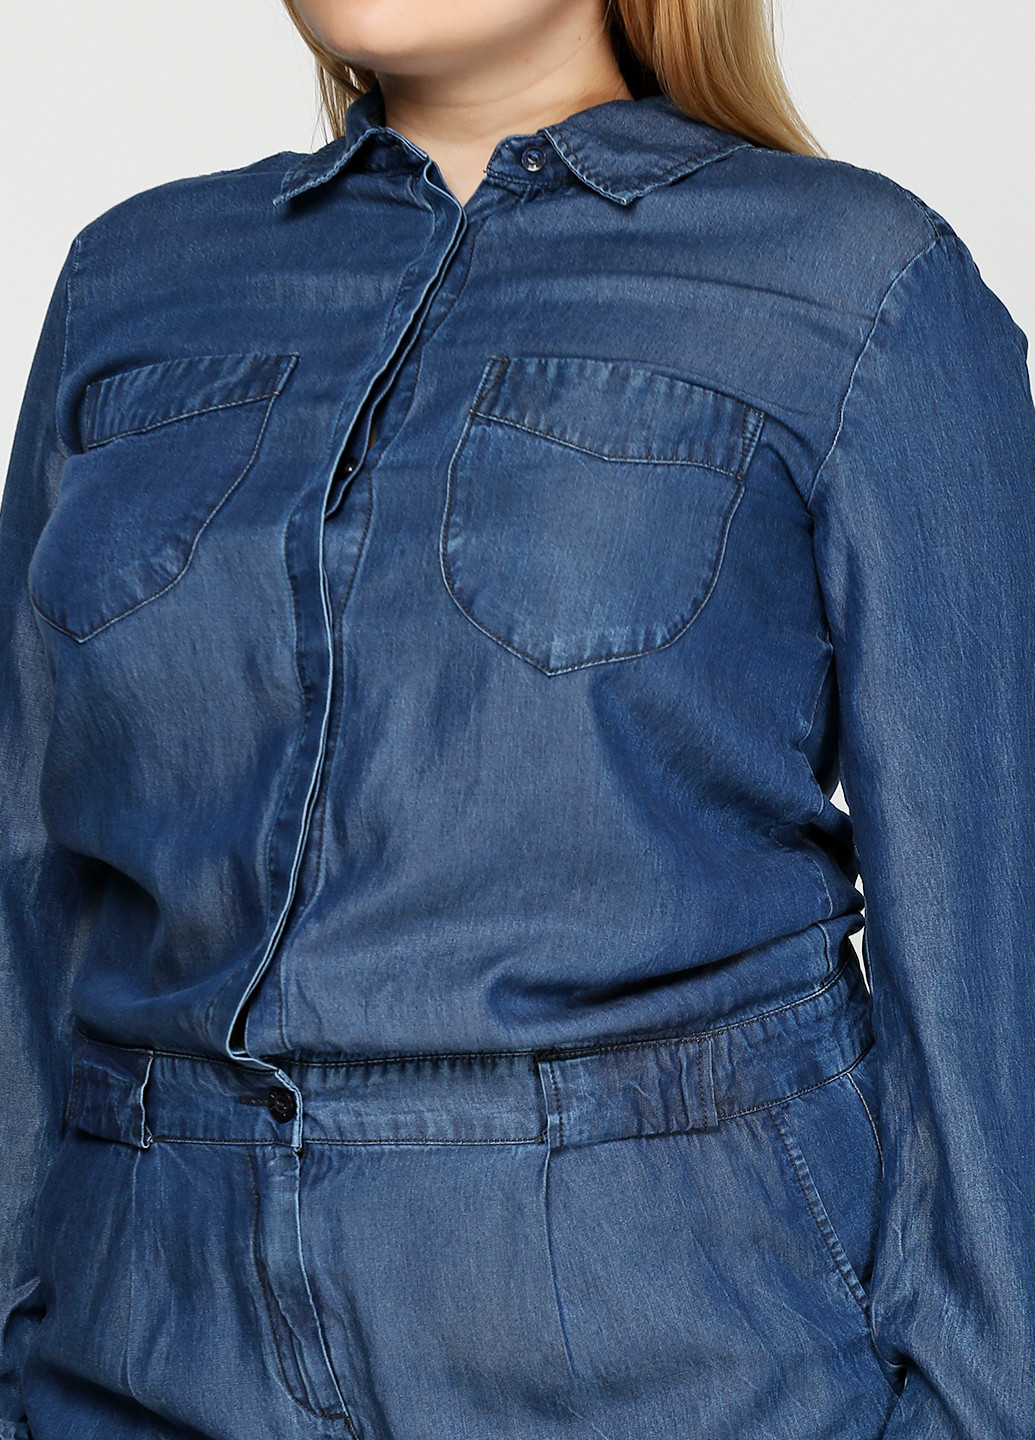 Комбинезон Sisley комбинезон-брюки однотонный синий кэжуал